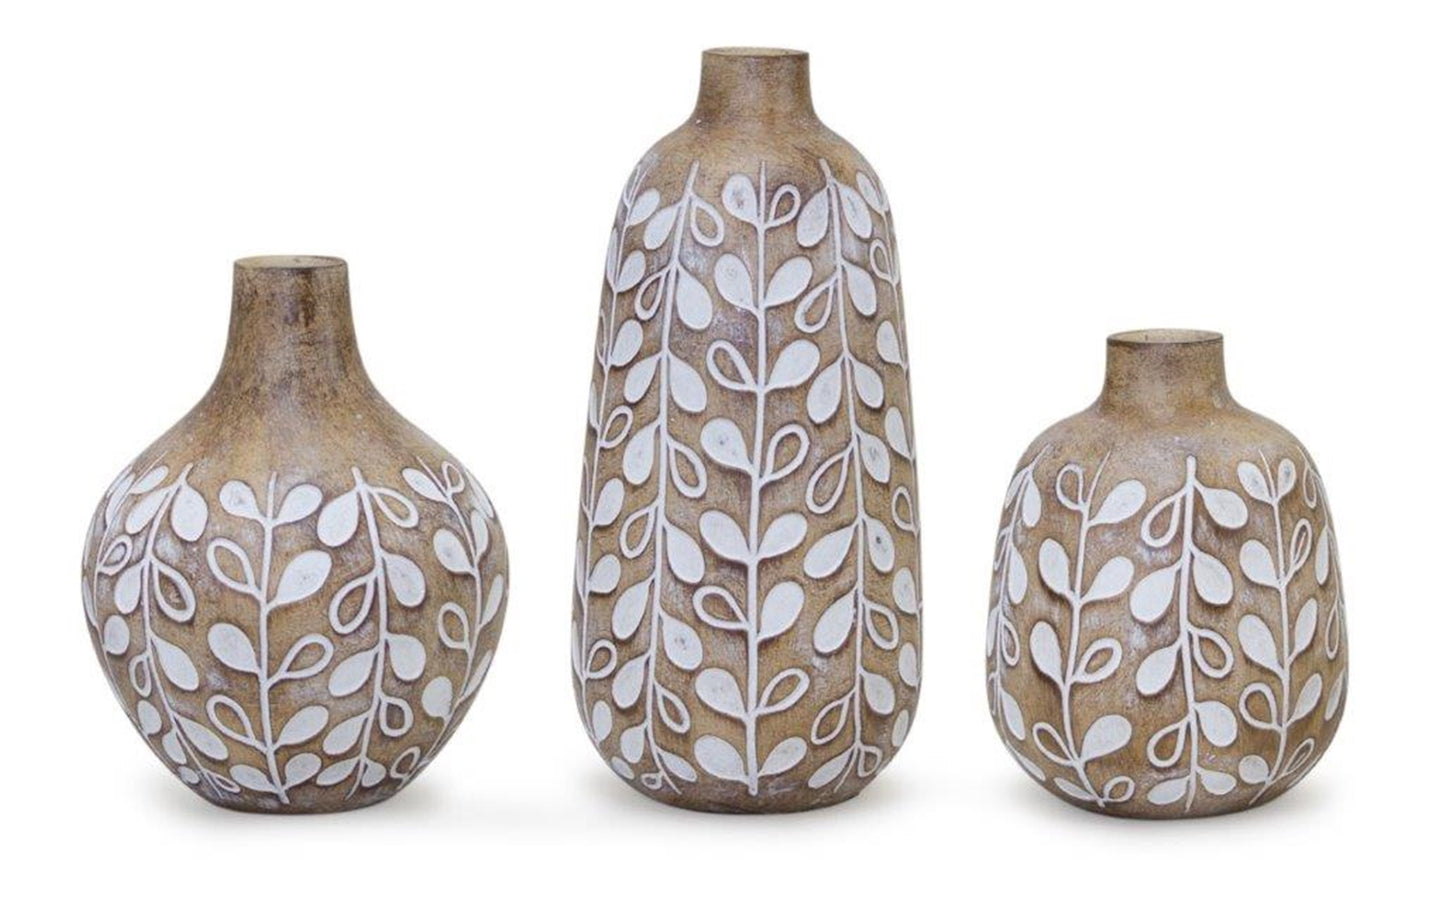 Leaf Print Vase with Wood Design (Set of 3)